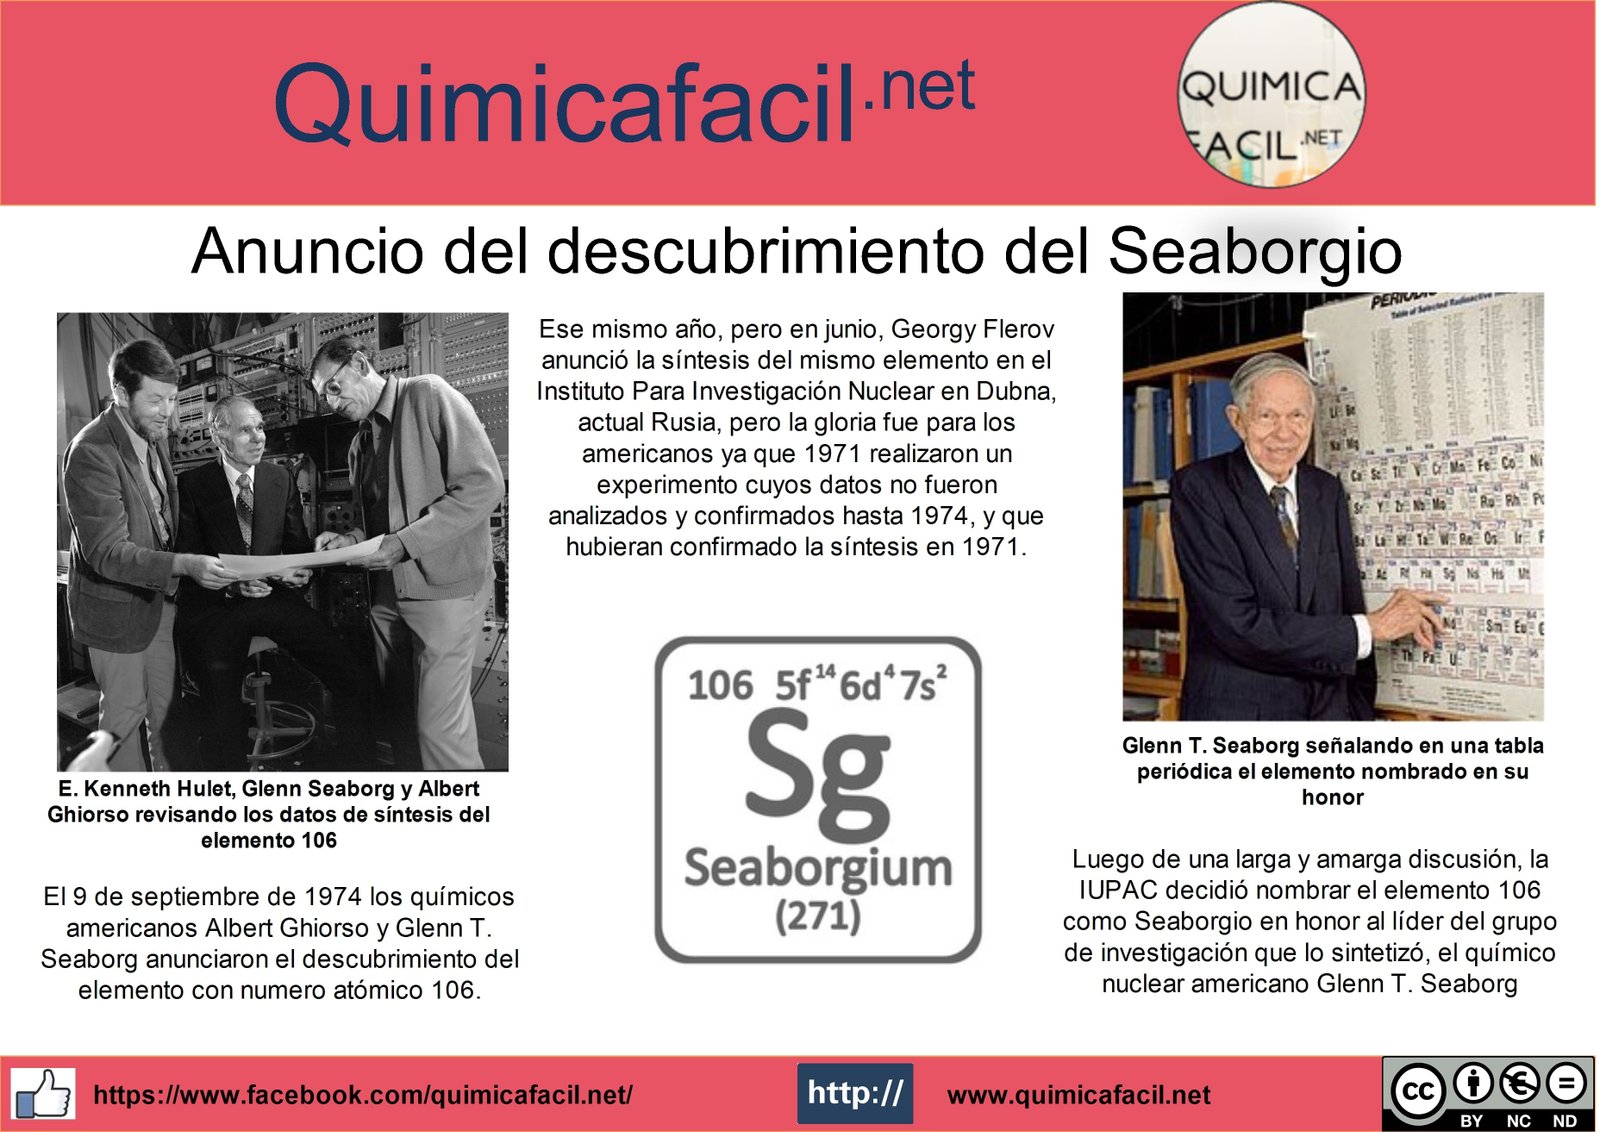 El 9 de septiembre de 1974 los químicos americanos Albert Ghiorso y Glenn T. Seaborg anunciaron el descubrimiento del elemento con numero atómico 106.